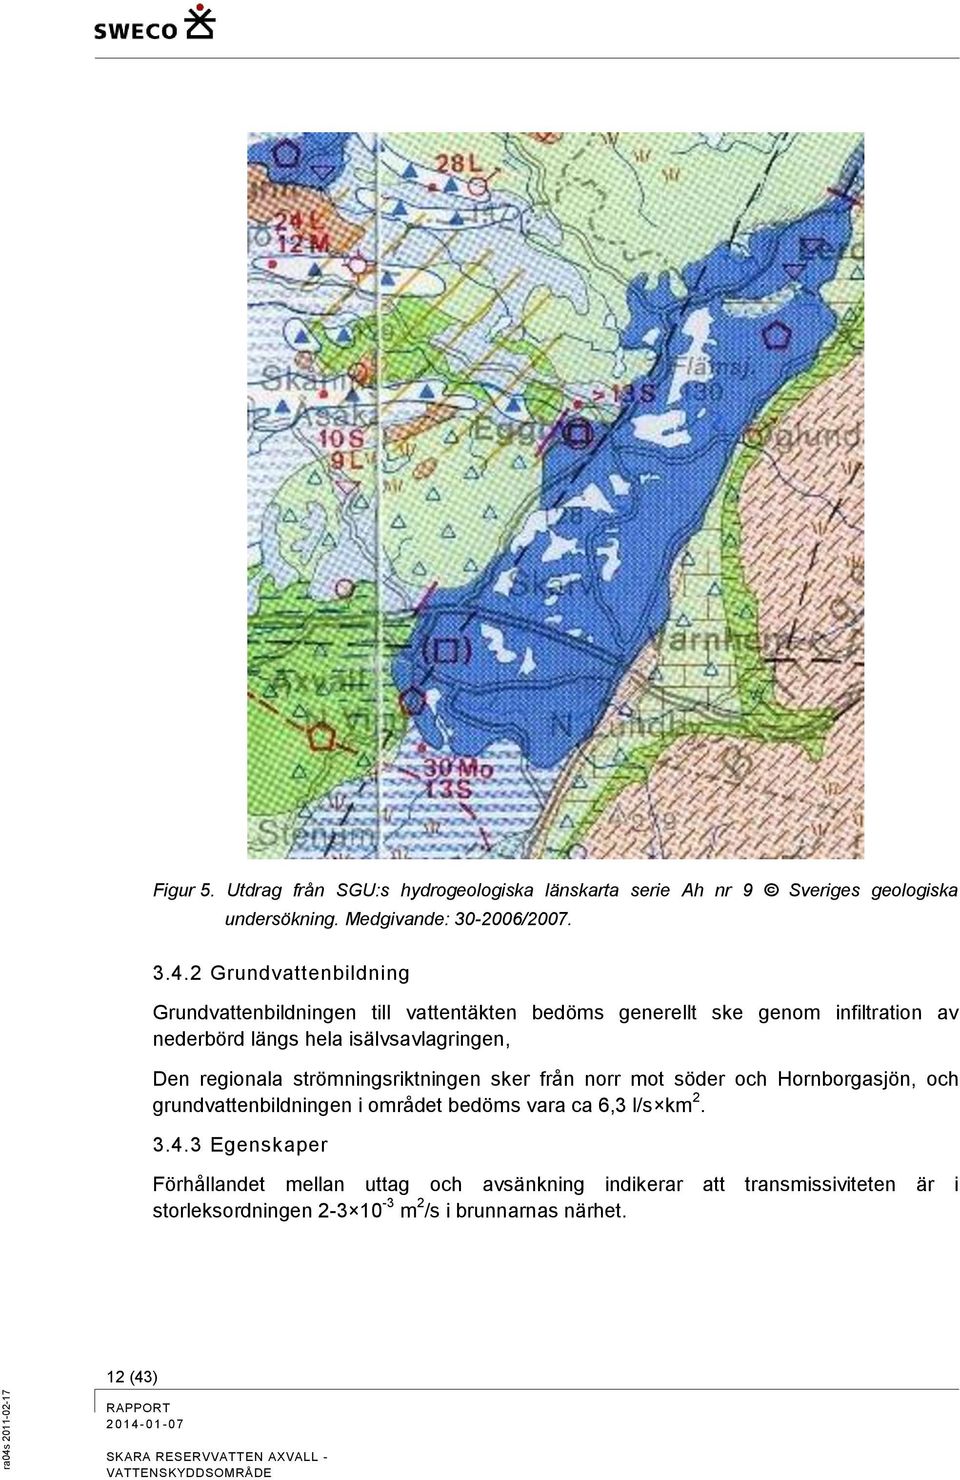 Den regionala strömningsriktningen sker från norr mot söder och Hornborgasjön, och grundvattenbildningen i området bedöms vara ca 6,3 l/s km 2.